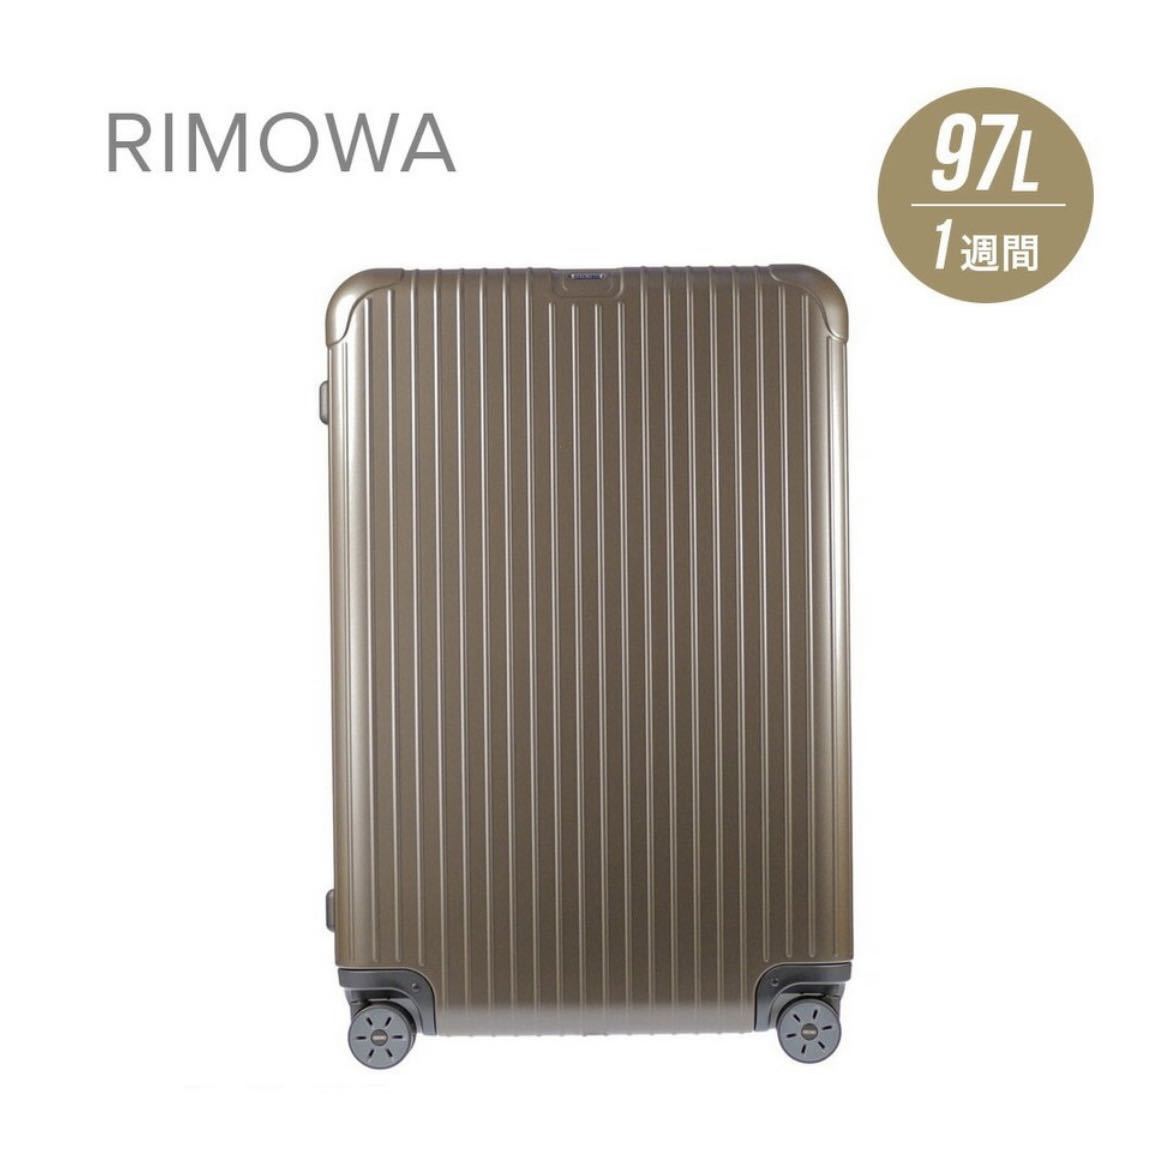 【新品未使用】リモワ RIMOWA SALSA スーツケース 97L キャリーケース サルサ 811.77.38.5ポリカーボネート 電子タグe-tag ブロンズ マット